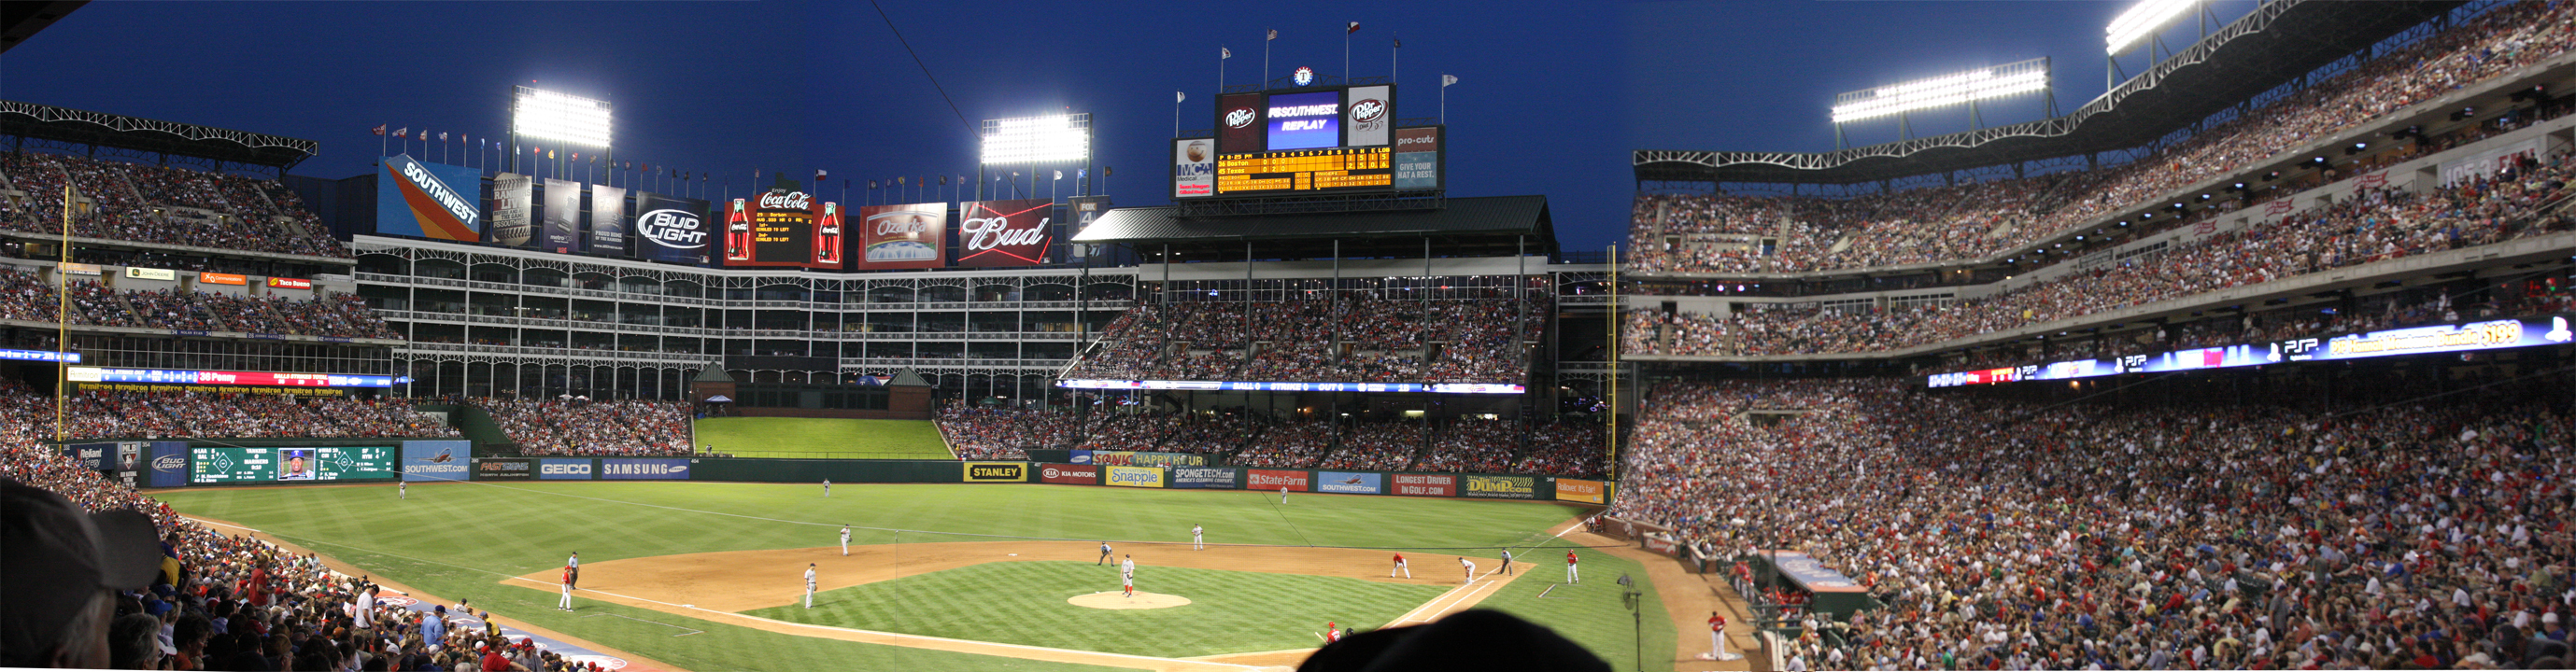 Texas Ranger Stadium by iballoon on